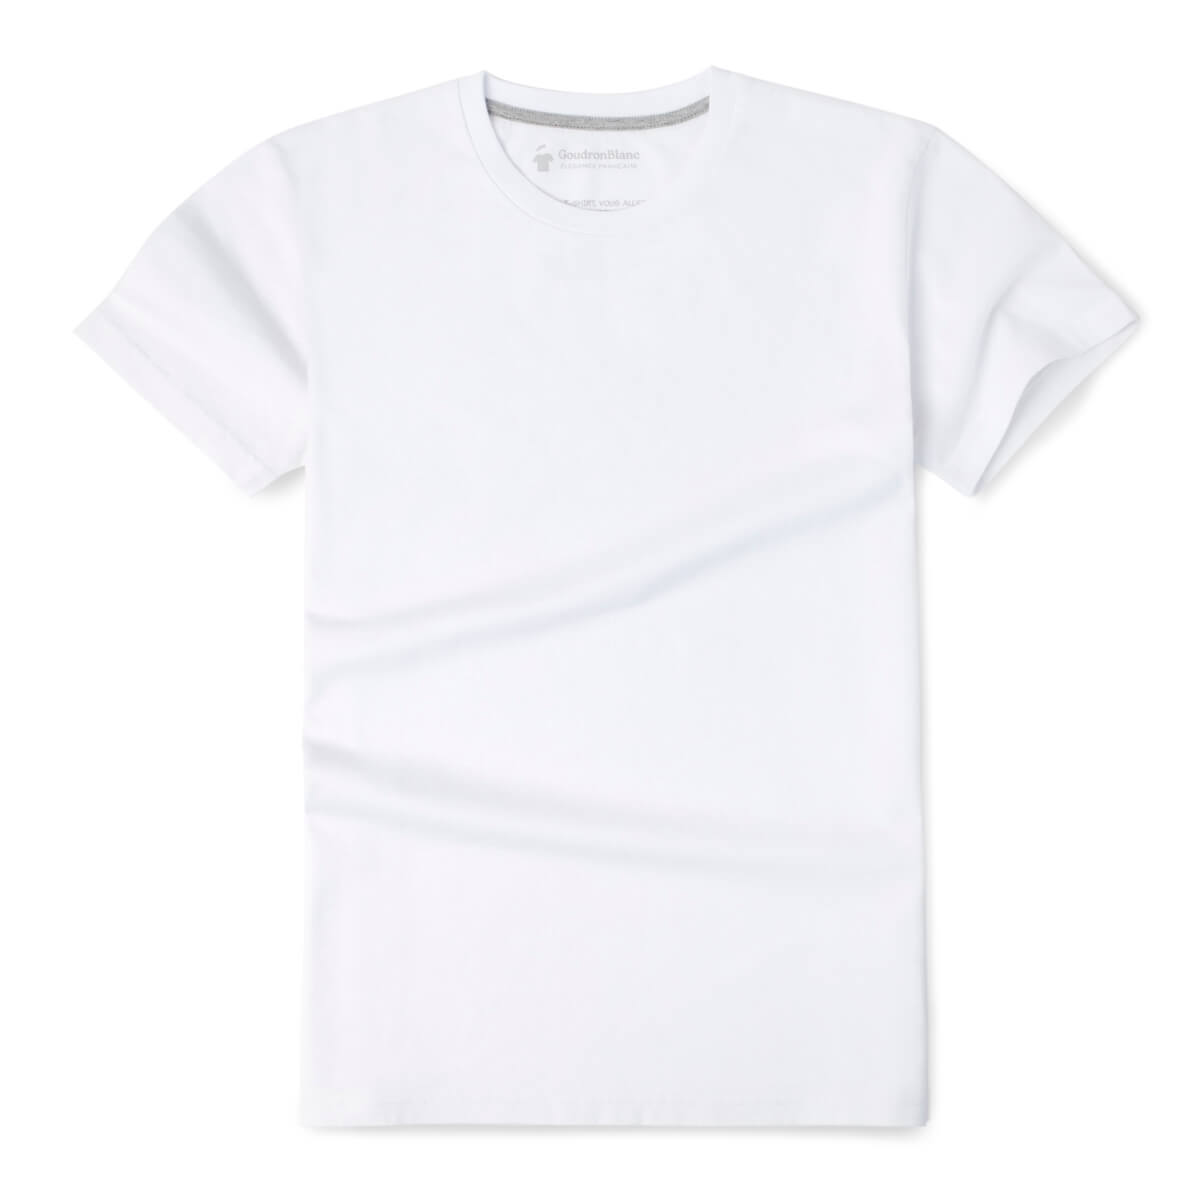 T-shirt blanc pour homme - Haute qualité - GoudronBlanc